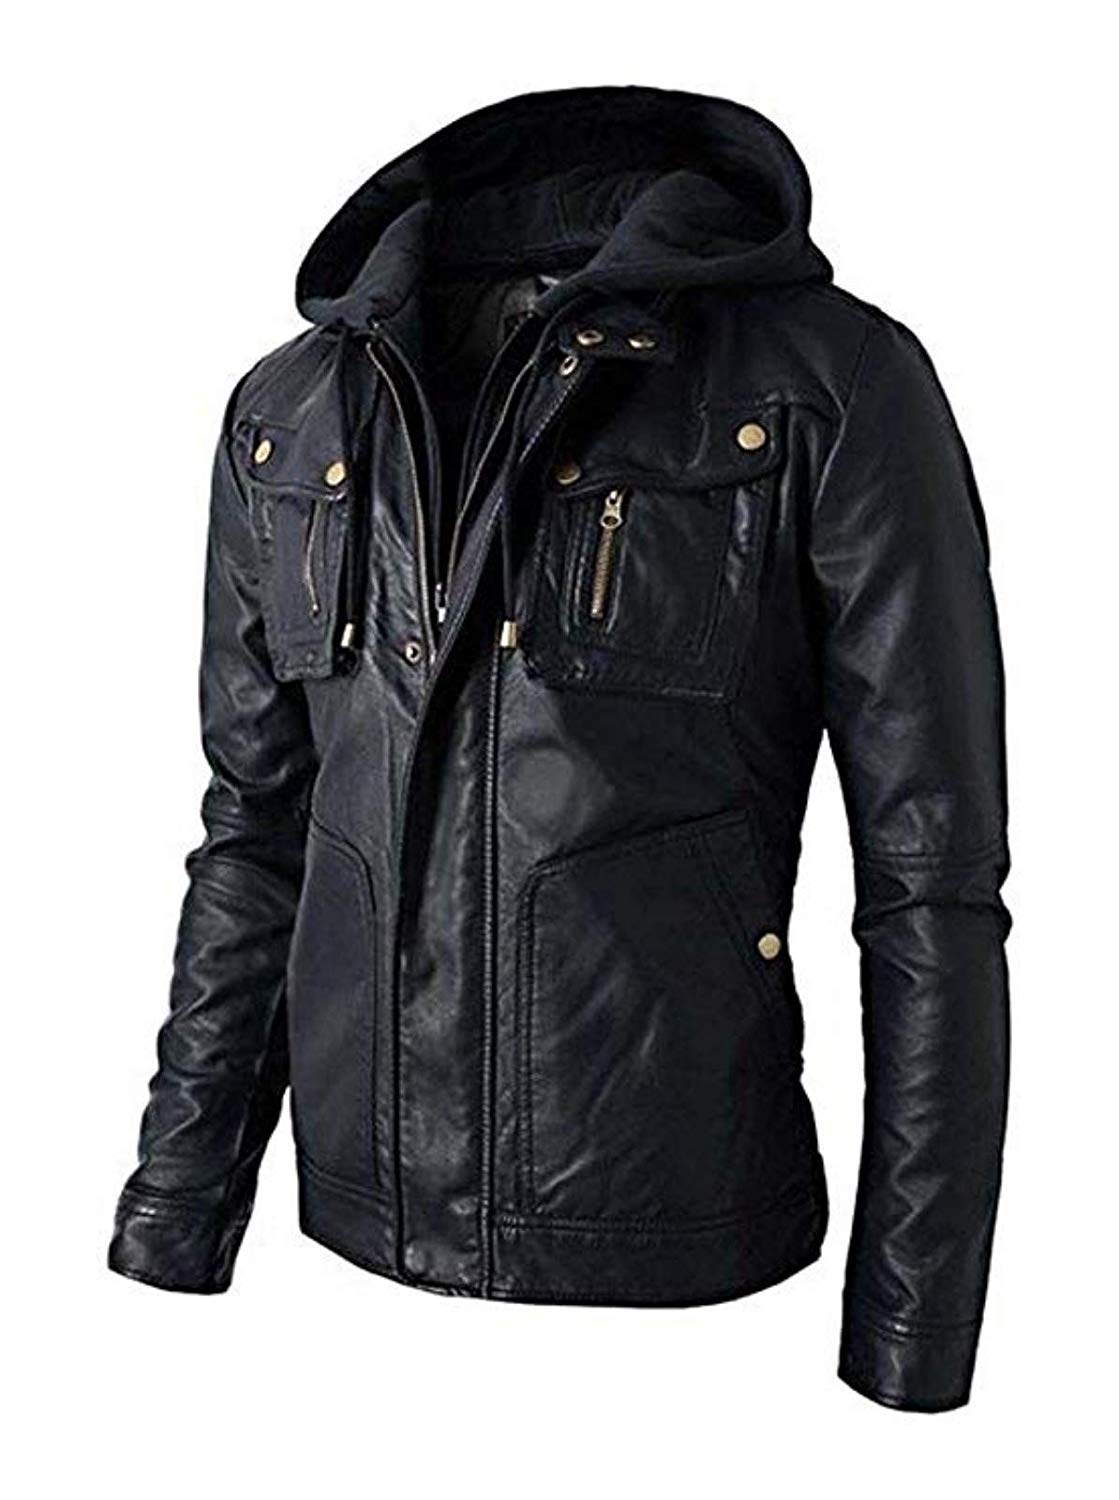 UZ Global Black Biker Mens Leather Jacket Leather Jacket for Men Regular Big & Tall 